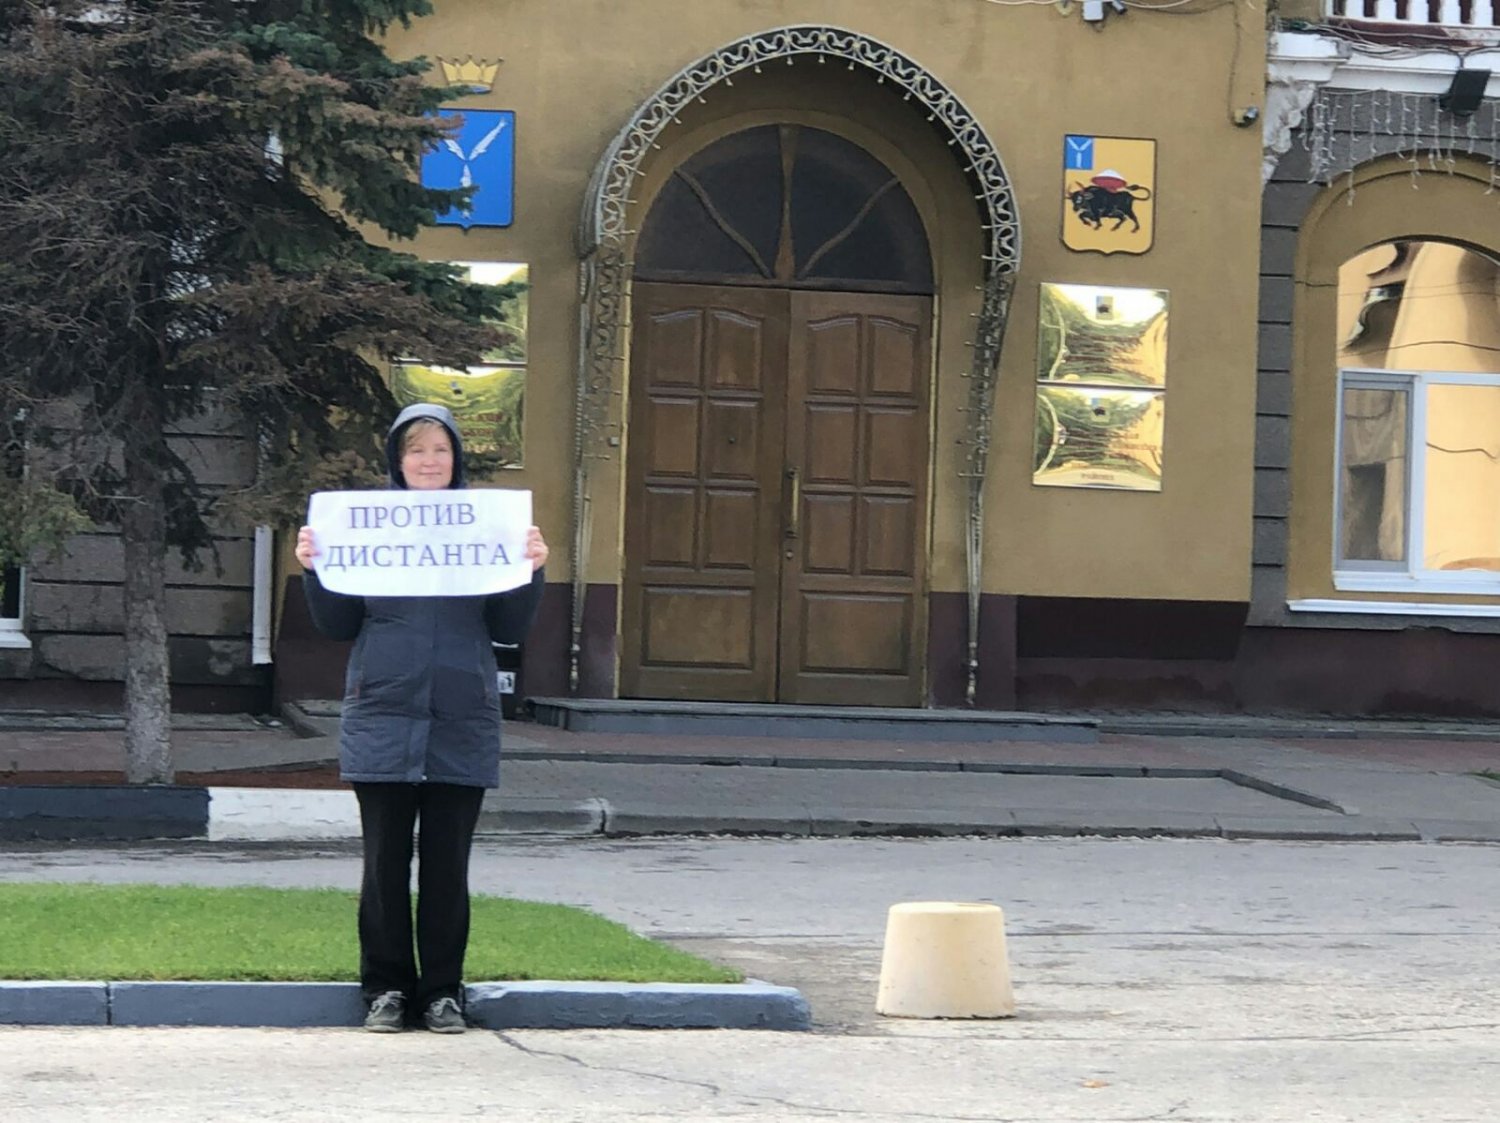 Наталья на пикете возле администрации Энгельсского района. Фото из сообщества Саратов против дистанта